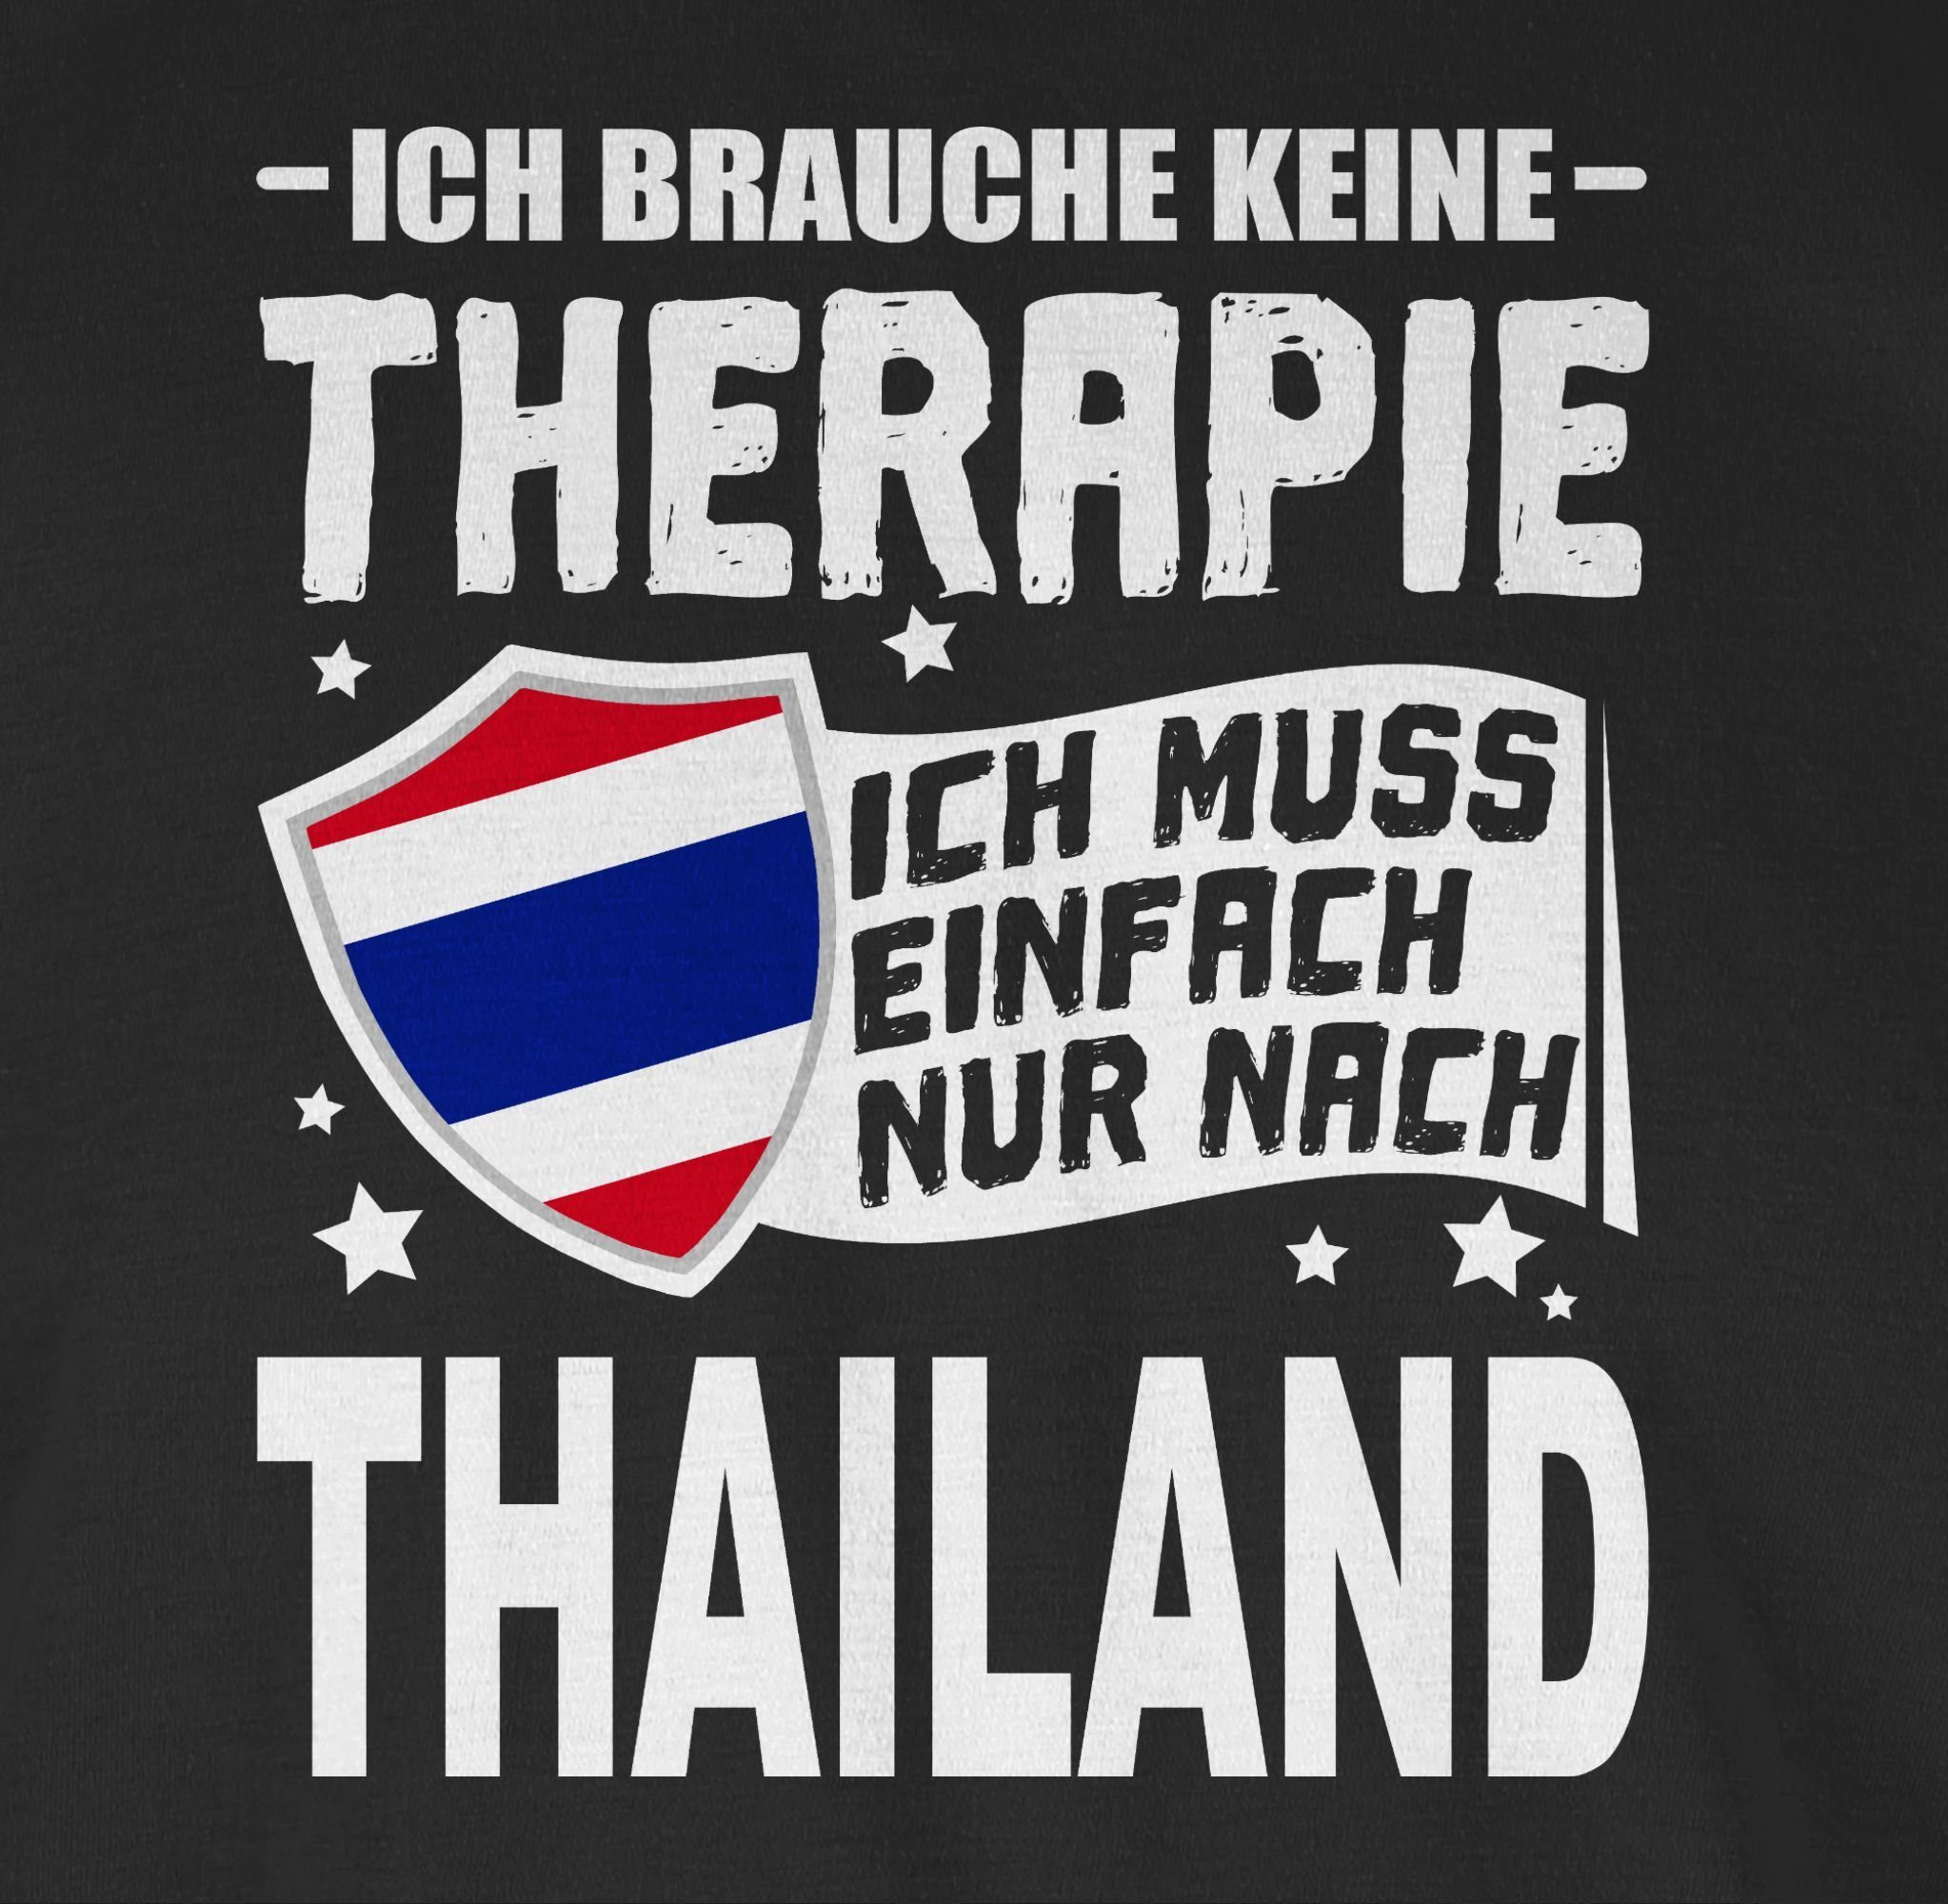 keine Wappen Therapie einfach Schwarz T-Shirt Ich Thailand Länder Shirtracer Ich - nach nur brauche 01 muss weiß